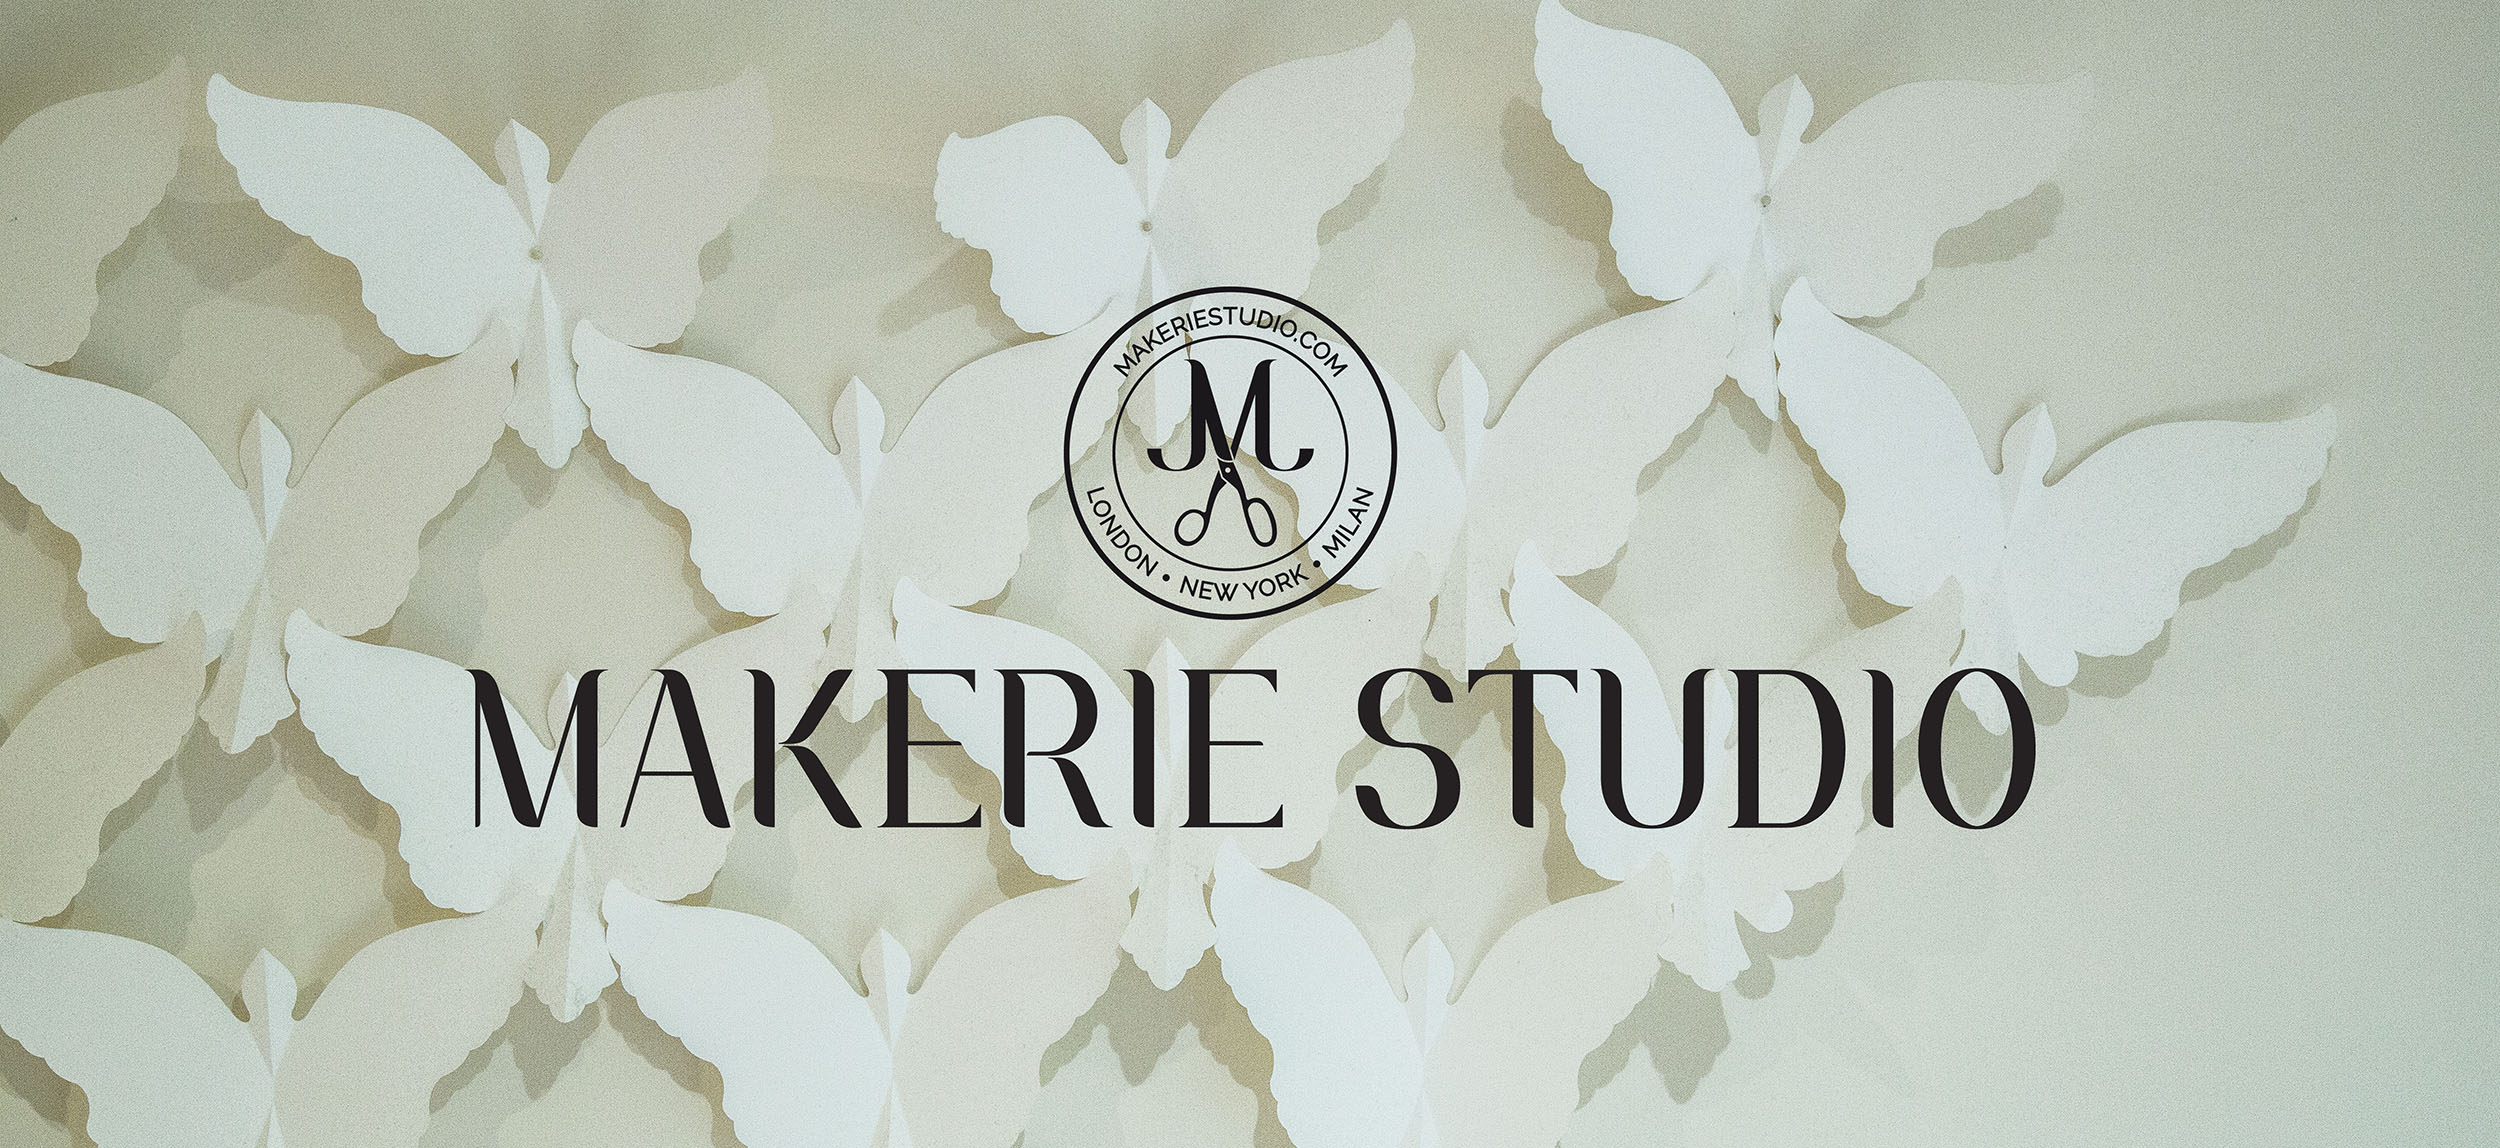 Ausschnitt aus dem Imagefilm über Makerie Studio von LEHNSTEIN